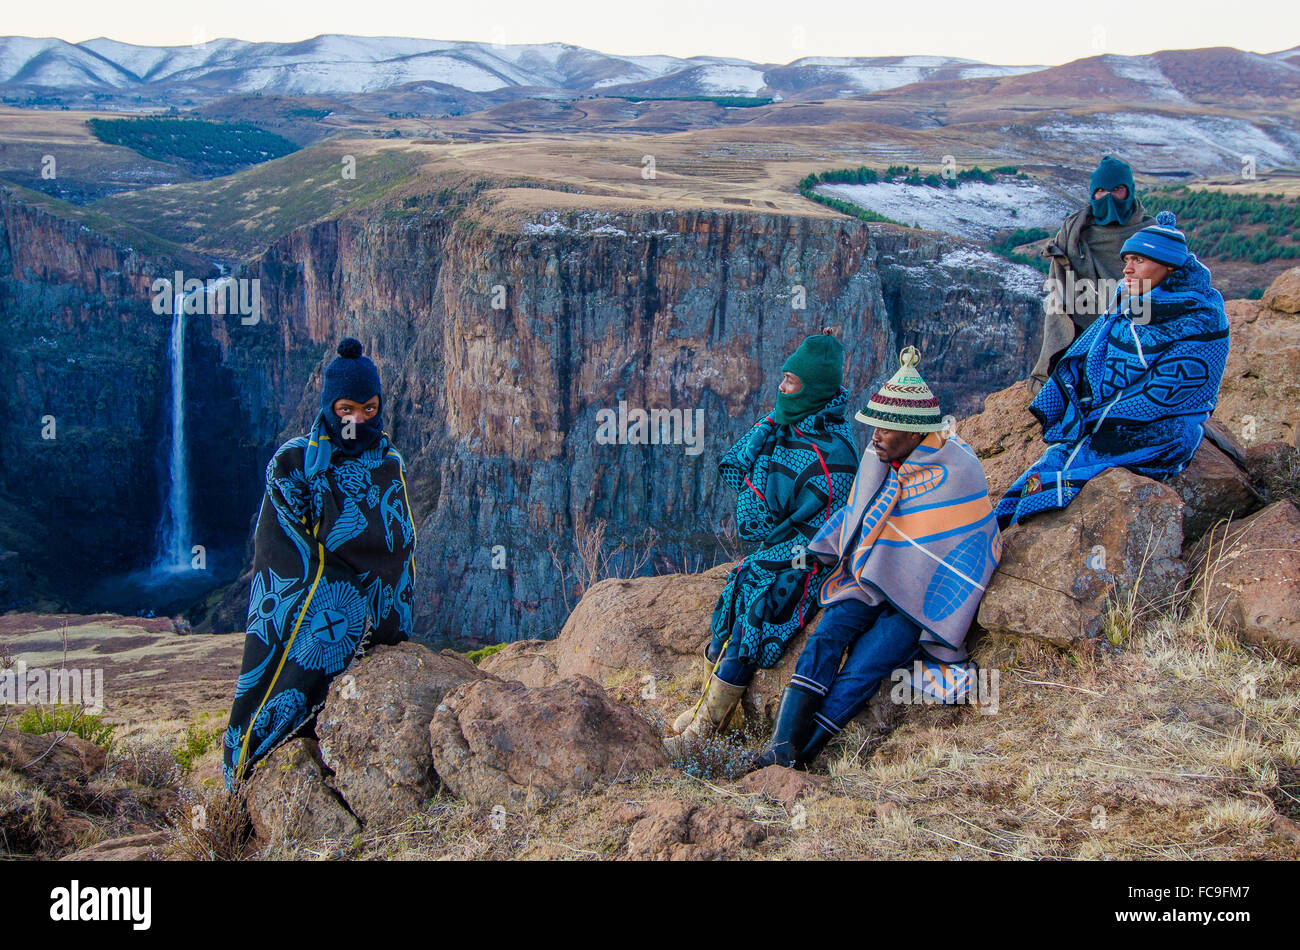 Pastores de ovejas locales convergen en los acantilados de Maletsunyane cae en la zona rural de Lesotho. Foto de stock